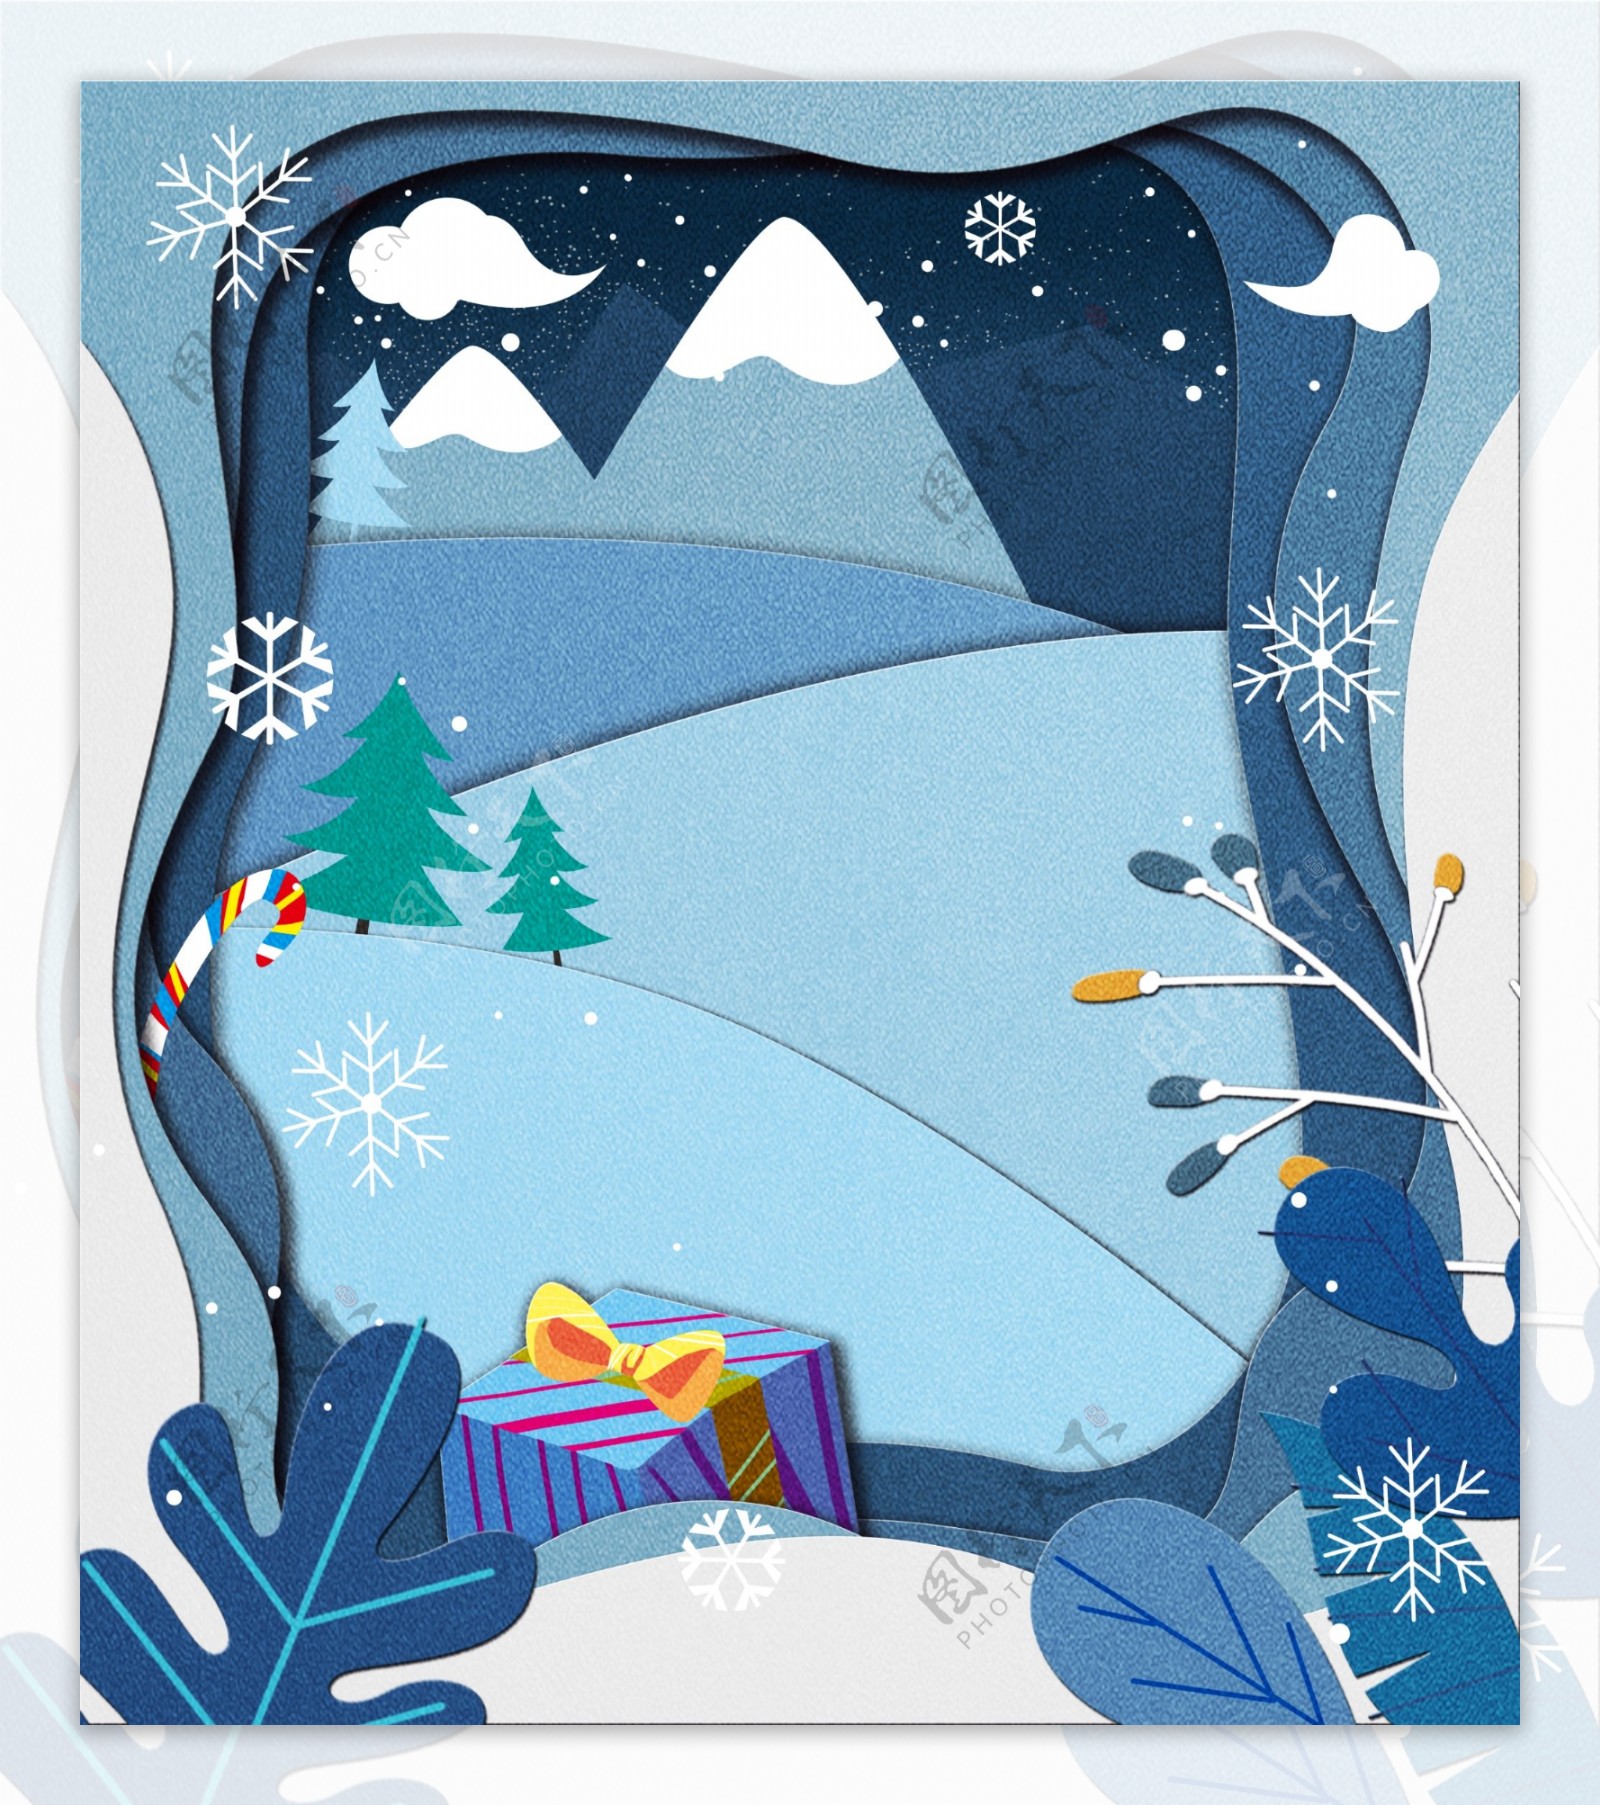 剪纸风蓝色雪地圣诞礼物背景设计